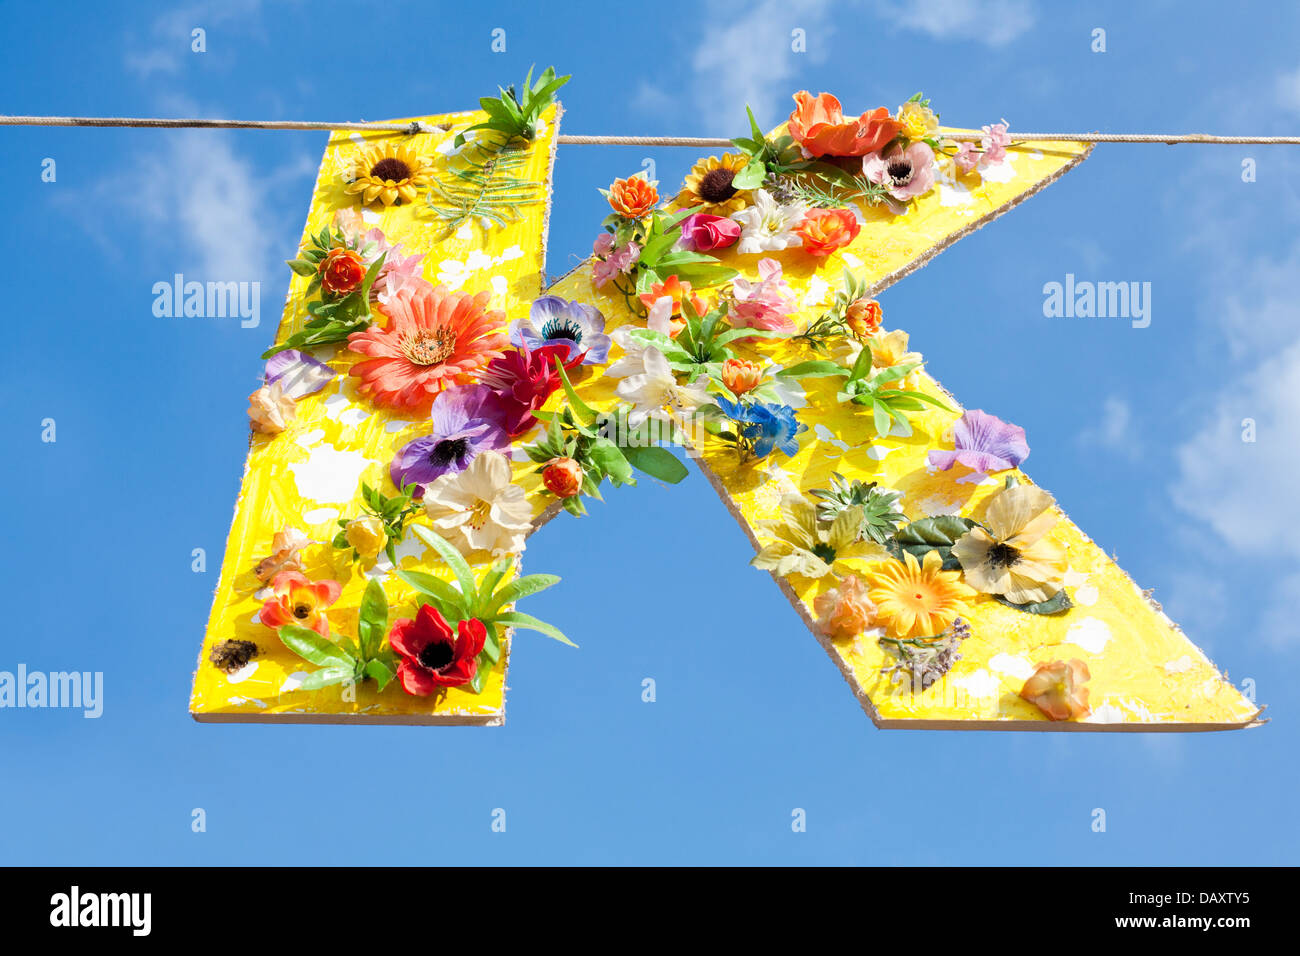 Karton Ausschnitt von den Buchstaben K, gelb lackiert und mit Blumen bedeckt. Hängen eine Linie gegen einen blauen Sommerhimmel. Stockfoto